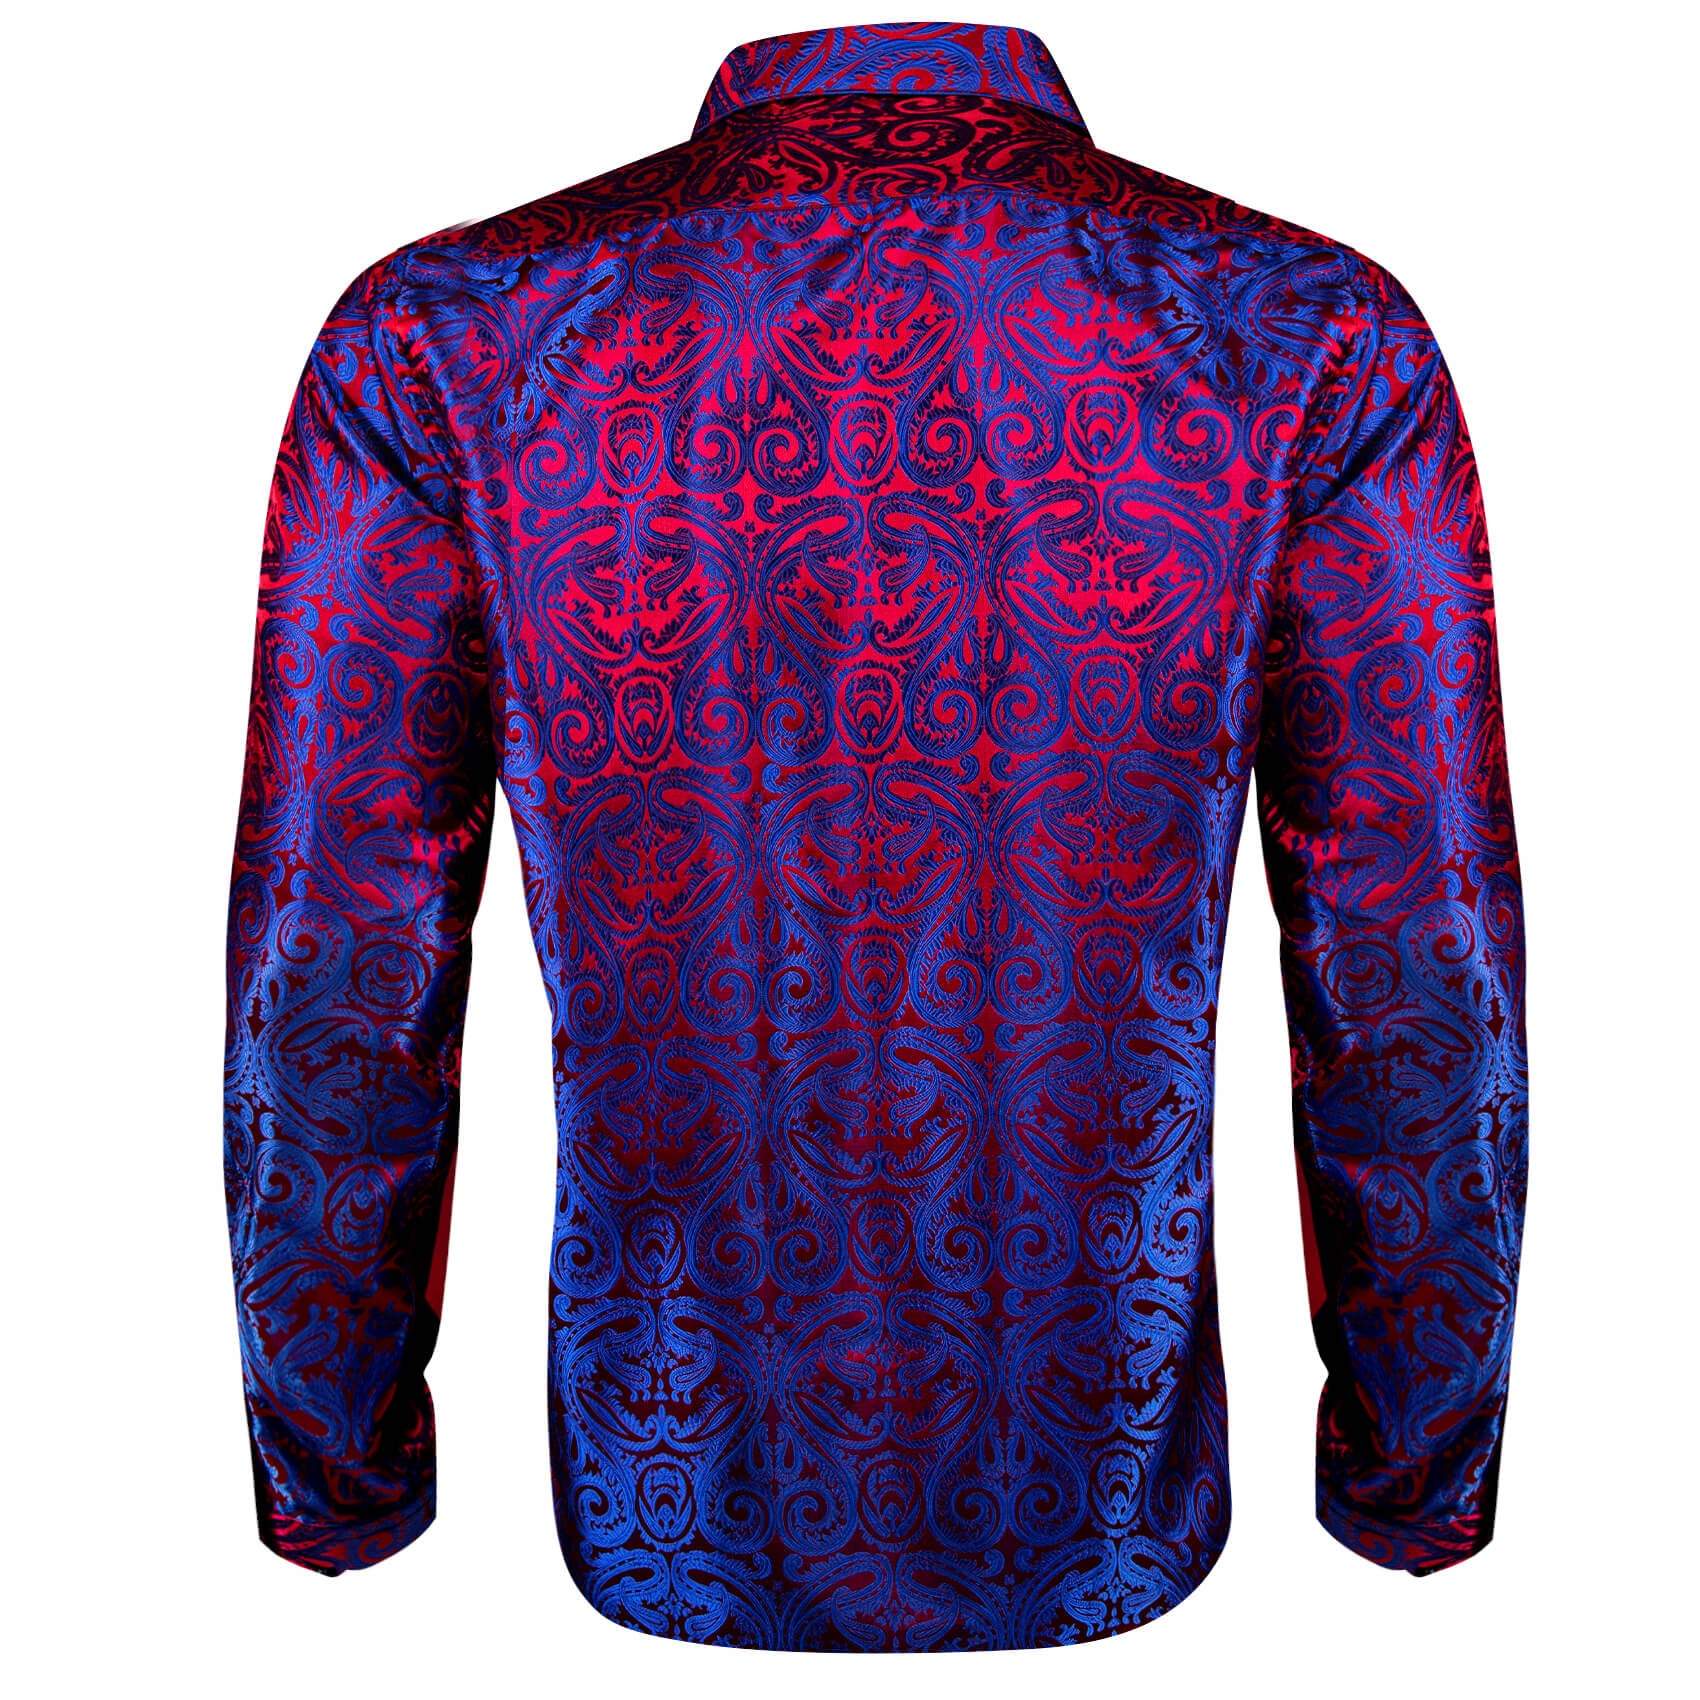 Barry Wang Men's Shirt Blue Red Paisley Silk Long Sleeve Shirt